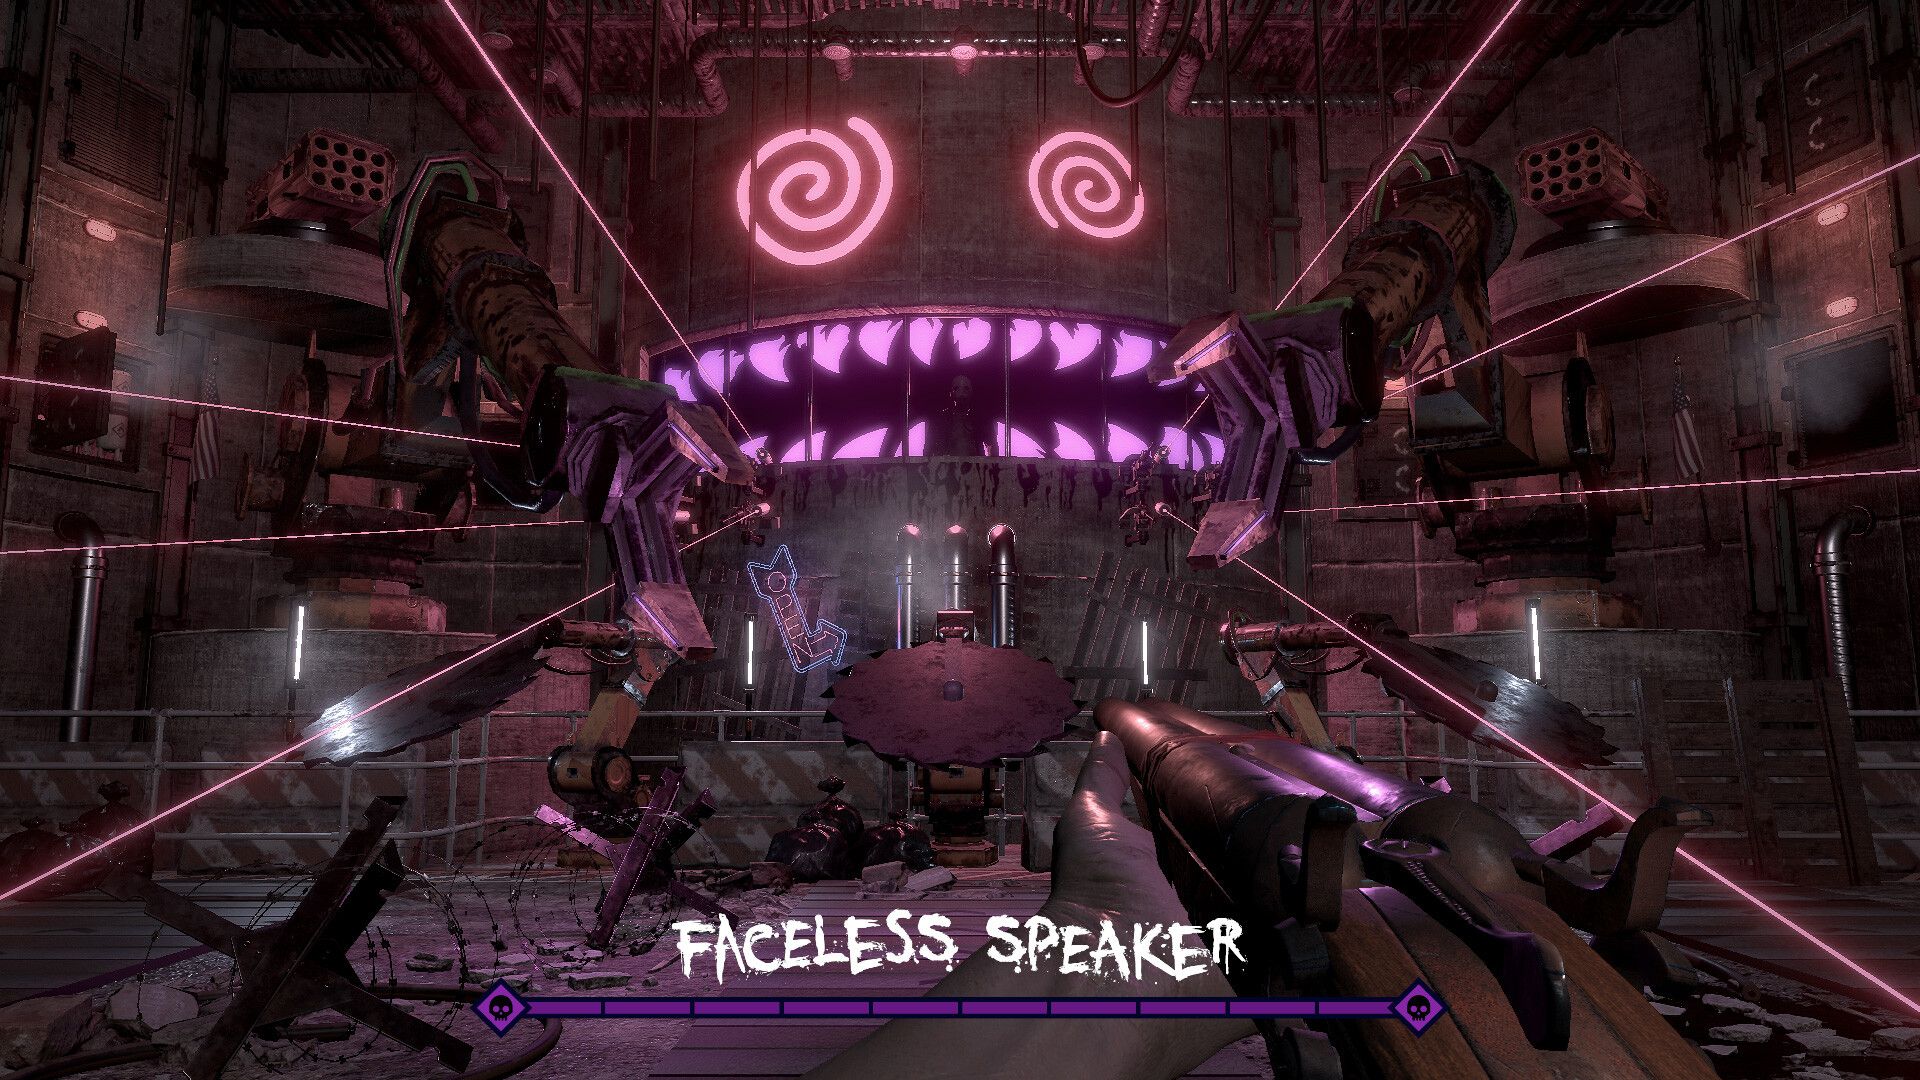 Jawbreaker Faceless speaker